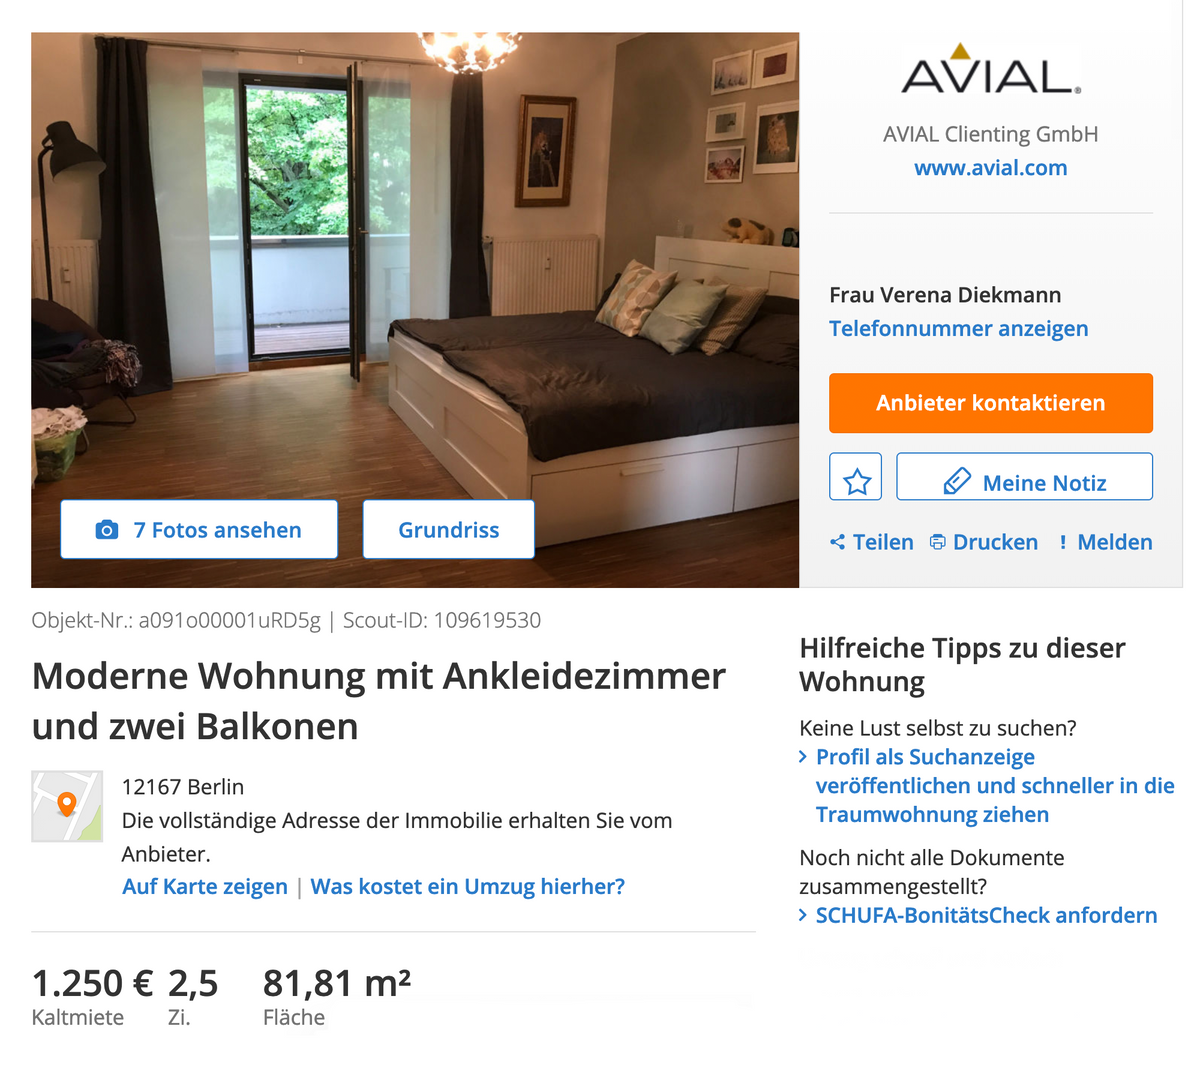 Квартира в отдаленном районе Штеглиц-Целендорф за 1250 € (93 250 <span class=ruble>Р</span>) в месяц